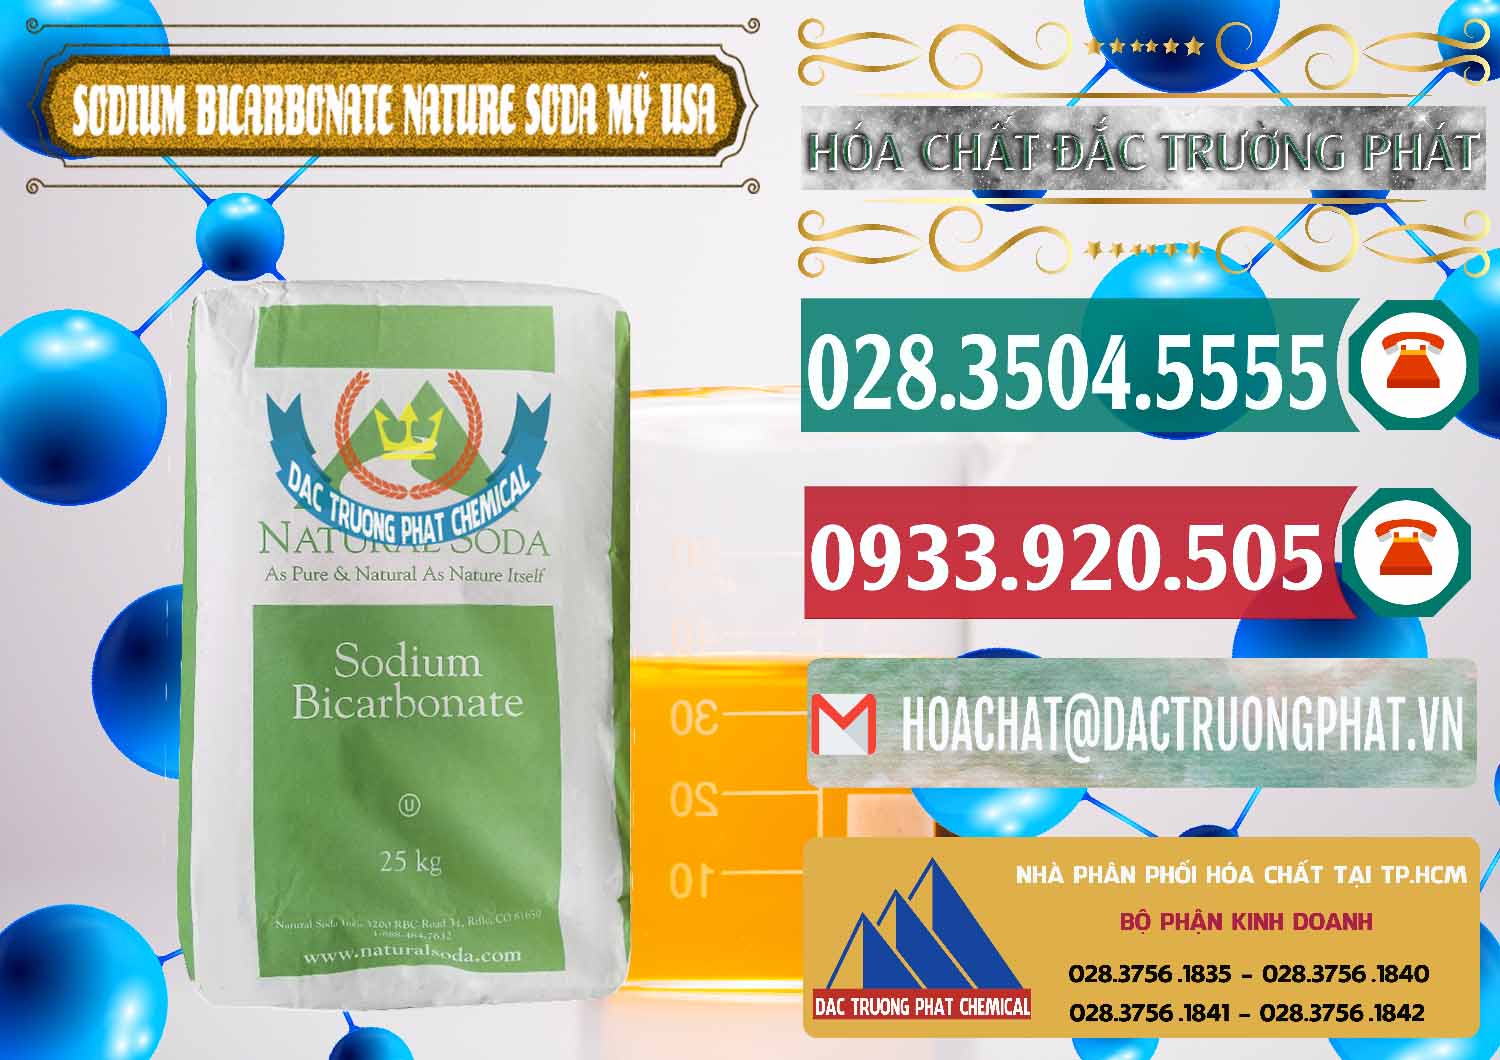 Cty chuyên cung ứng ( bán ) Sodium Bicarbonate – Bicar NaHCO3 Food Grade Nature Soda Mỹ USA - 0256 - Công ty chuyên phân phối ( bán ) hóa chất tại TP.HCM - muabanhoachat.vn